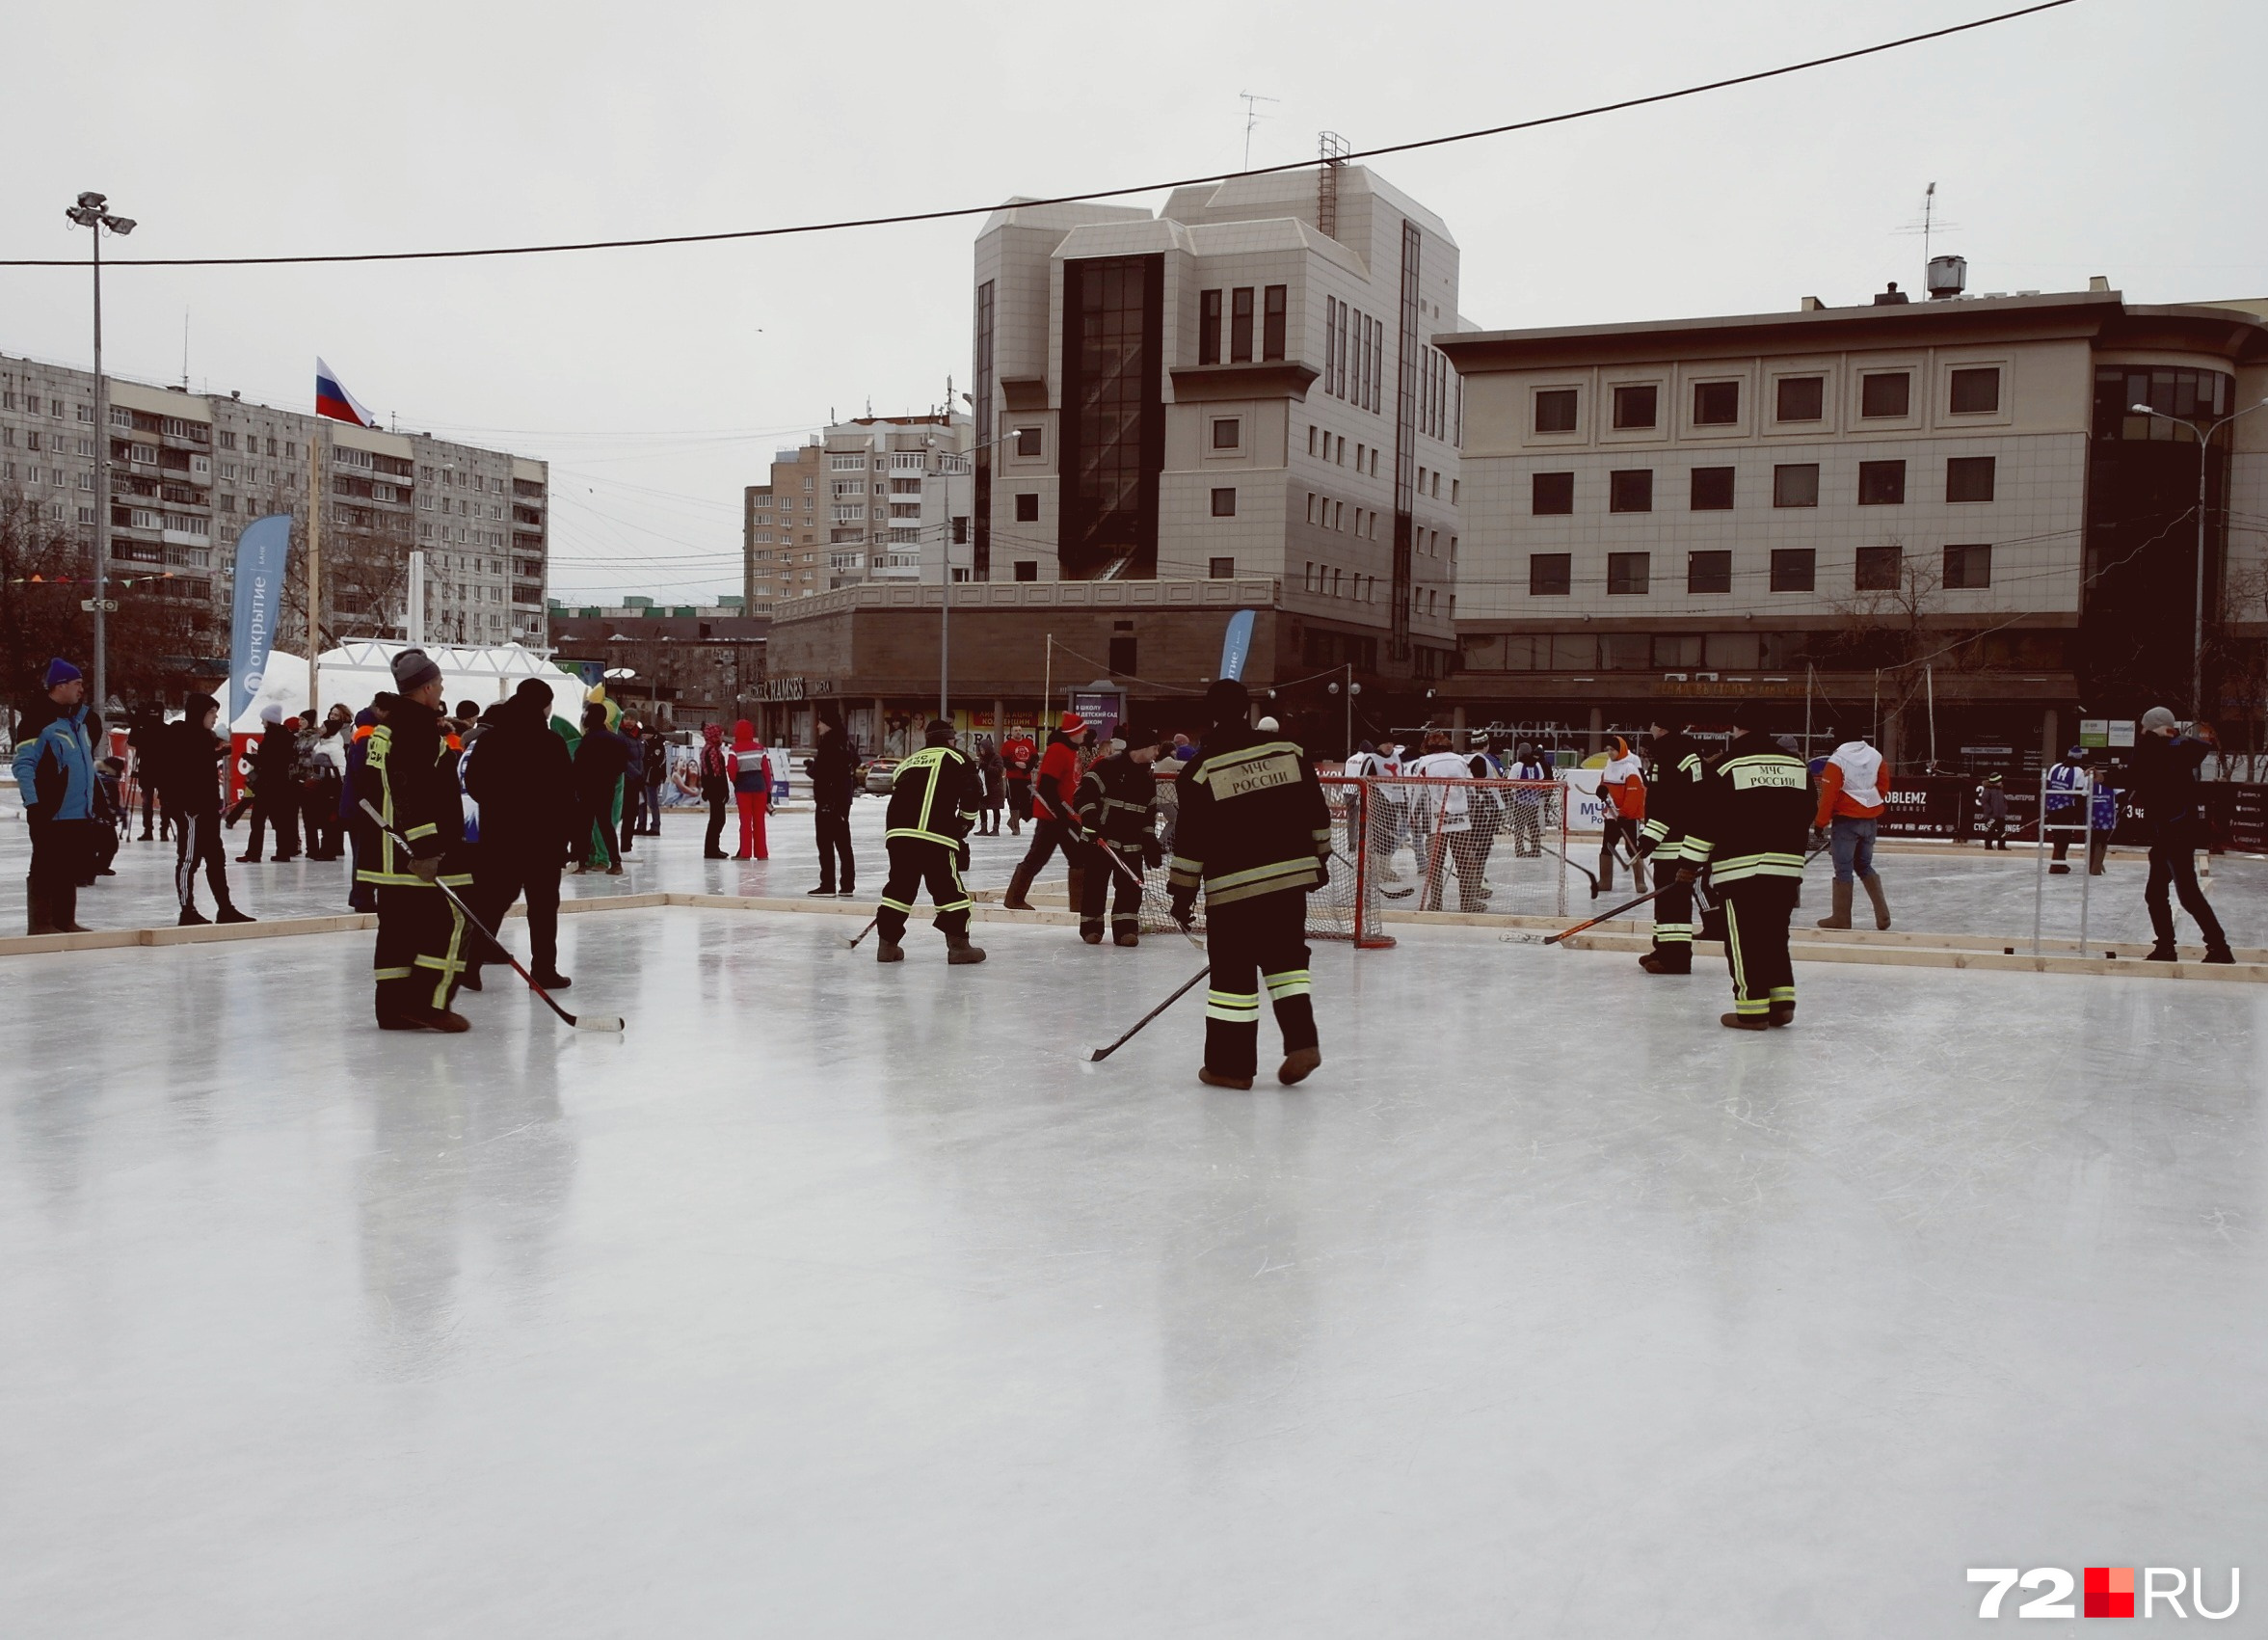 Всего на льду играли восемь команд. Среди них были не только пожарные, но и моржи, банкиры, чиновники, представители пресс-служб